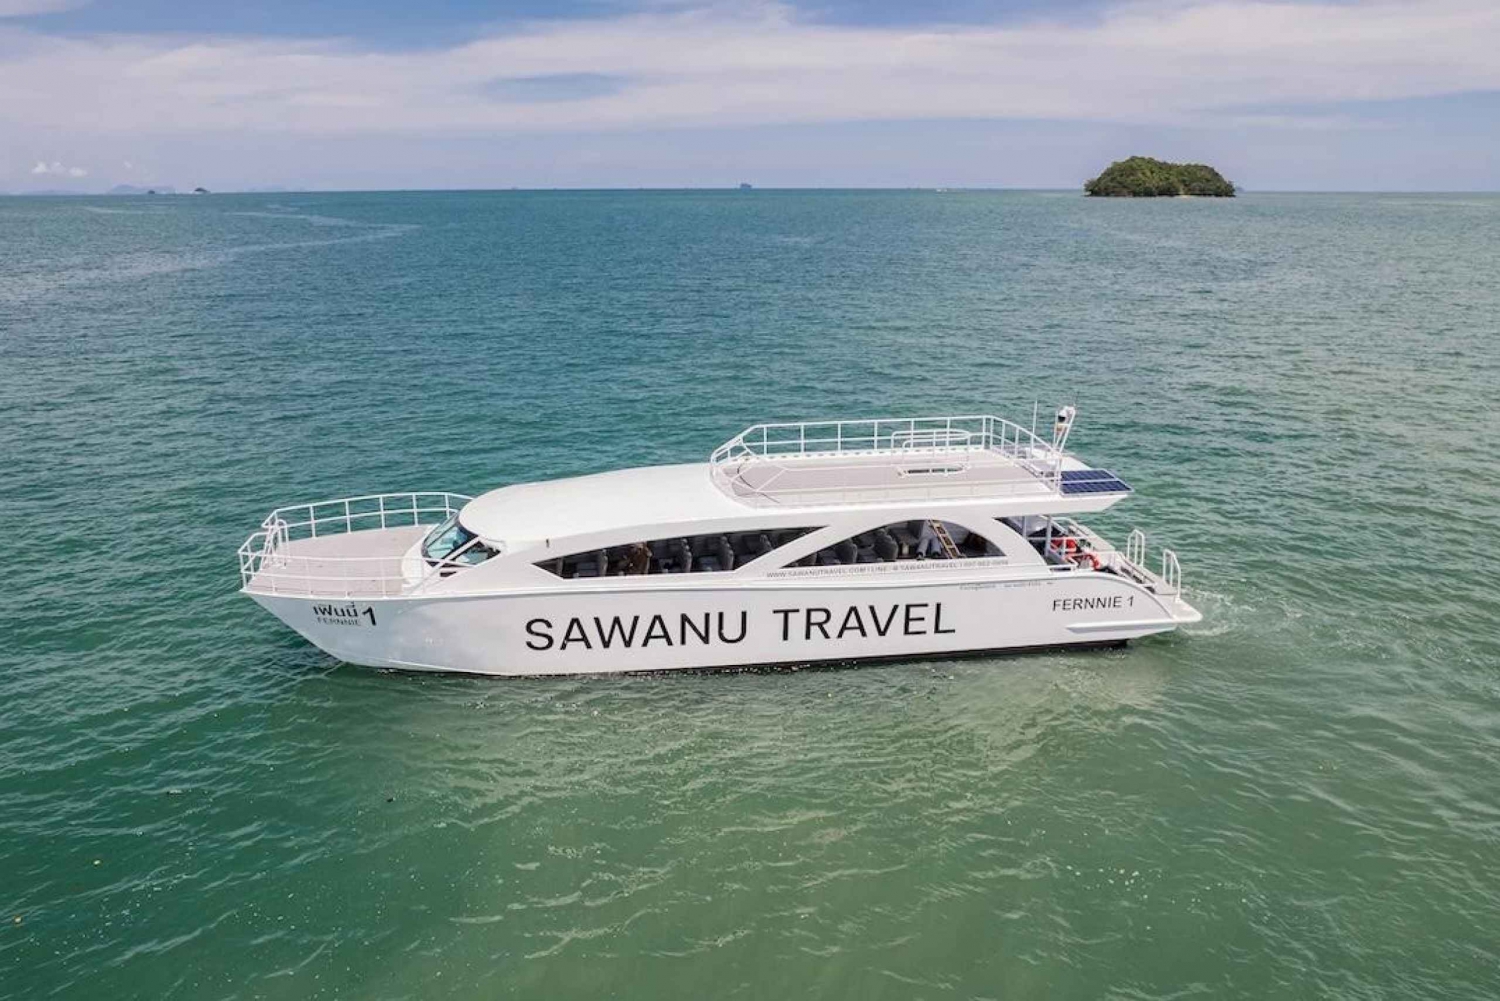 Phuket : Excursion d'une journée sur l'île Similan en catamaran rapide